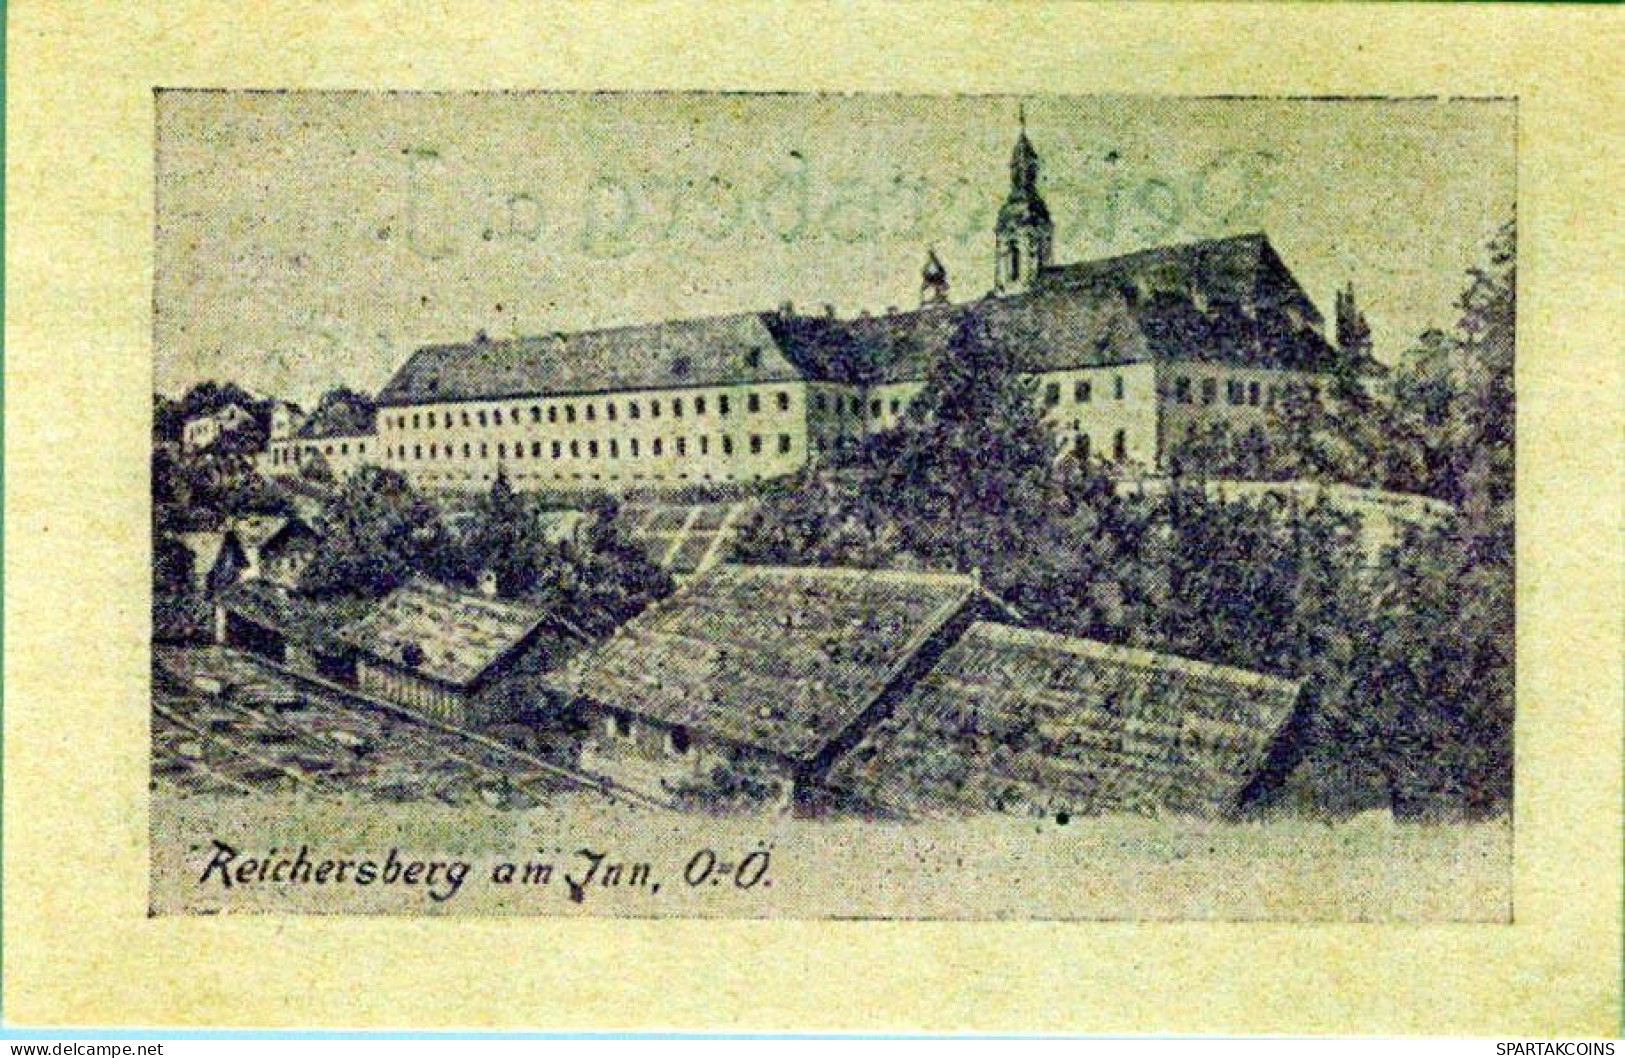 50 HELLER 1920 Stadt REICHERSBERG Oberösterreich Österreich Notgeld #PD953 - [11] Local Banknote Issues